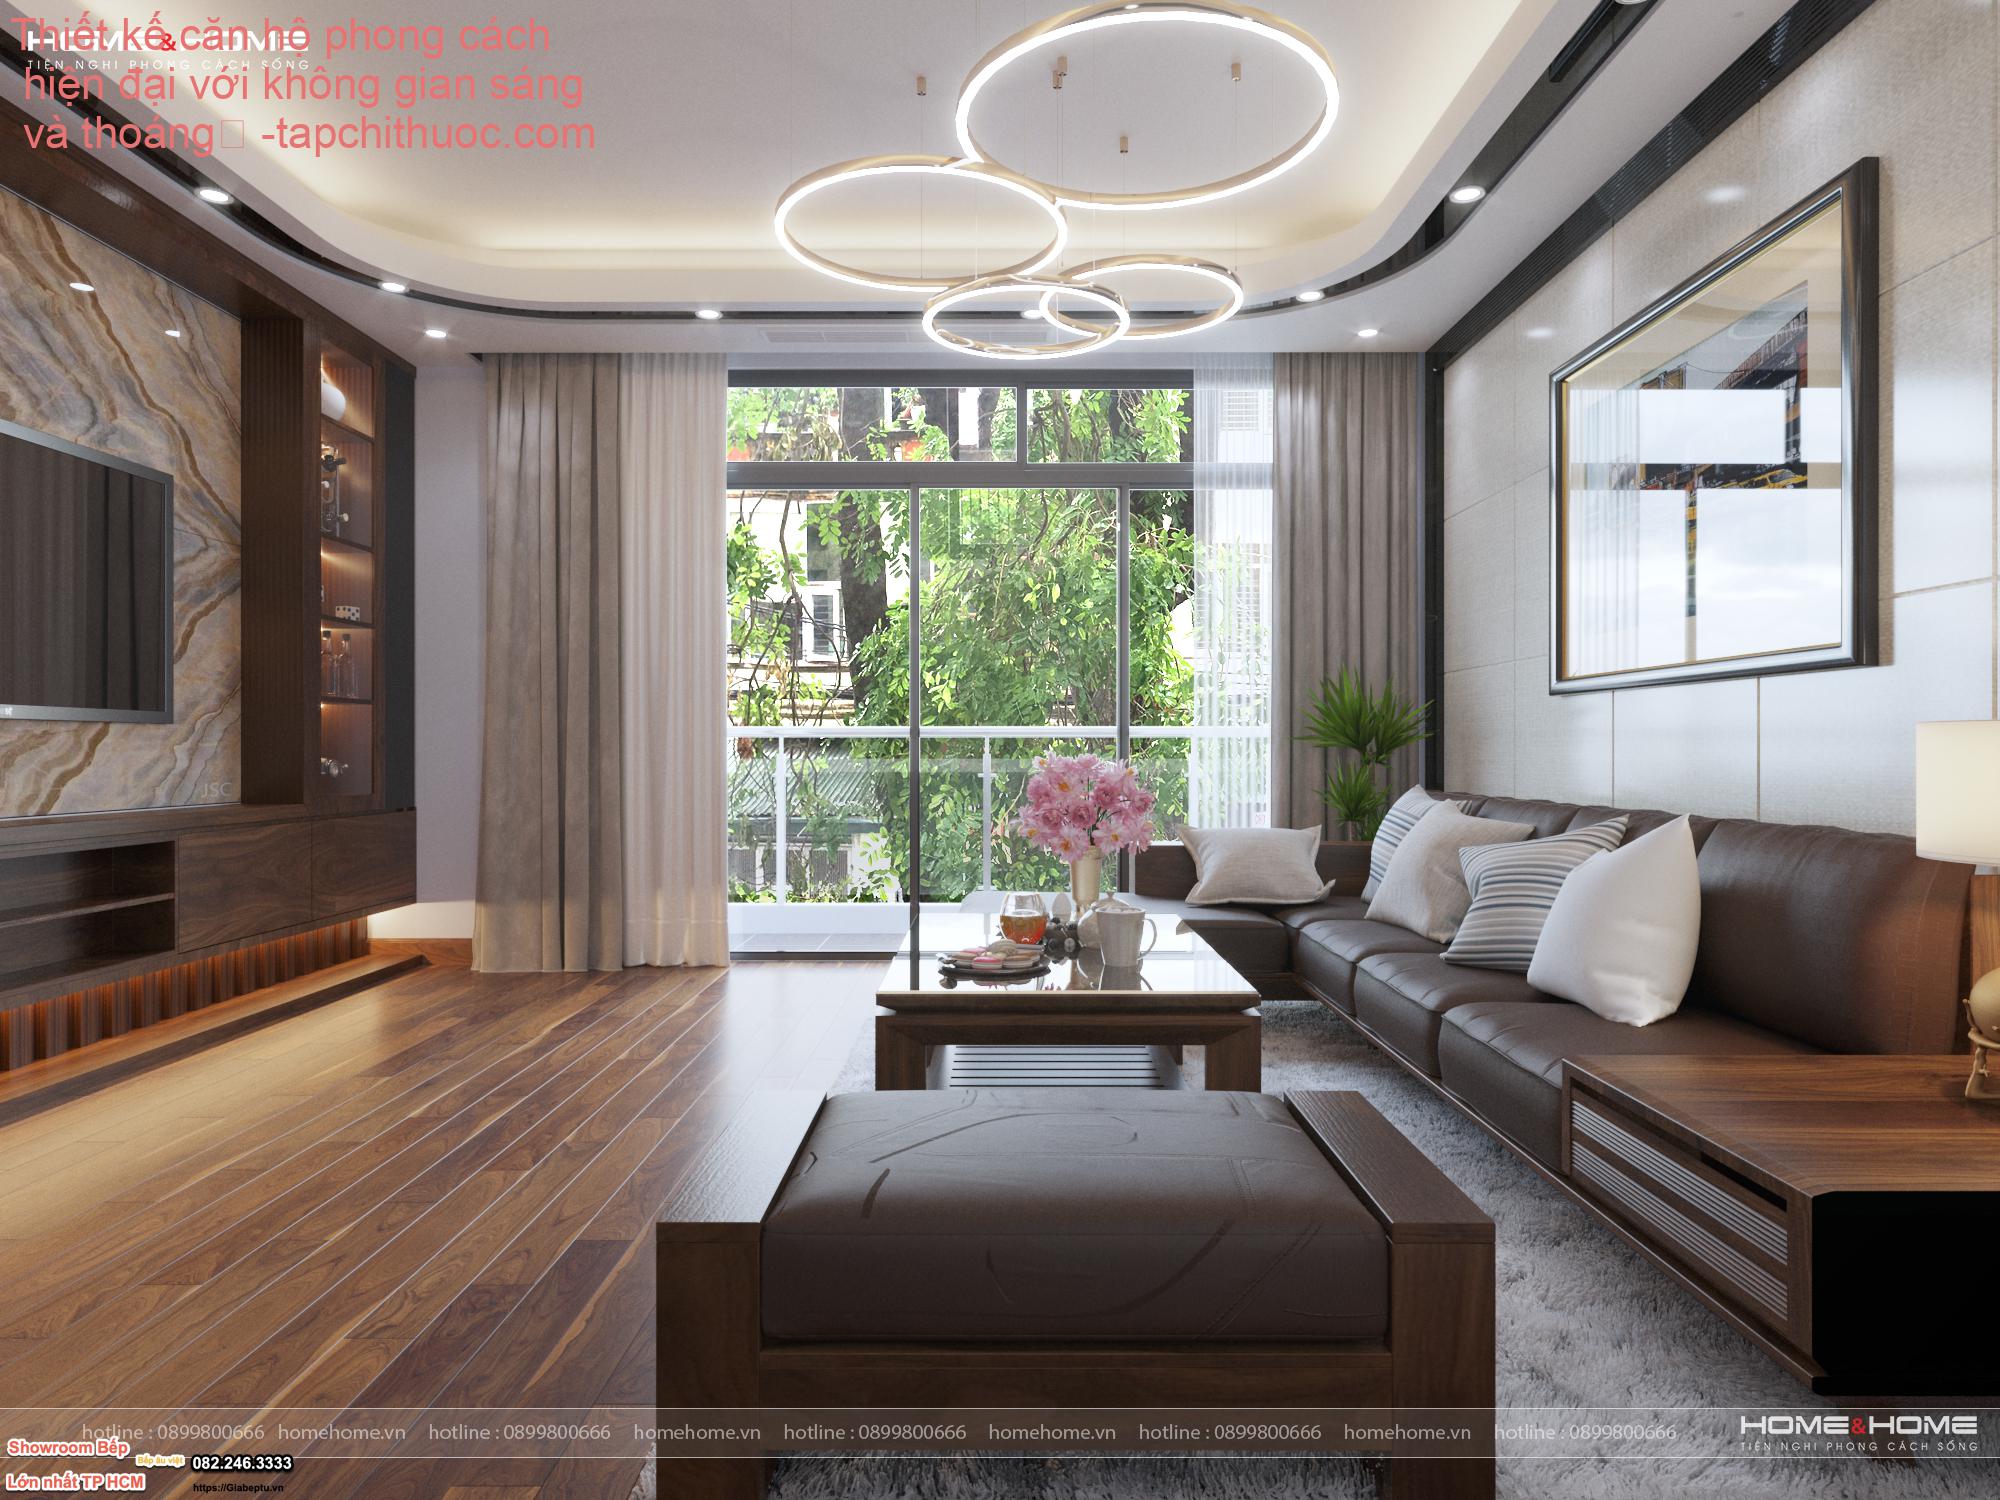 Thiết kế căn hộ phong cách hiện đại với không gian sáng và thoáng
